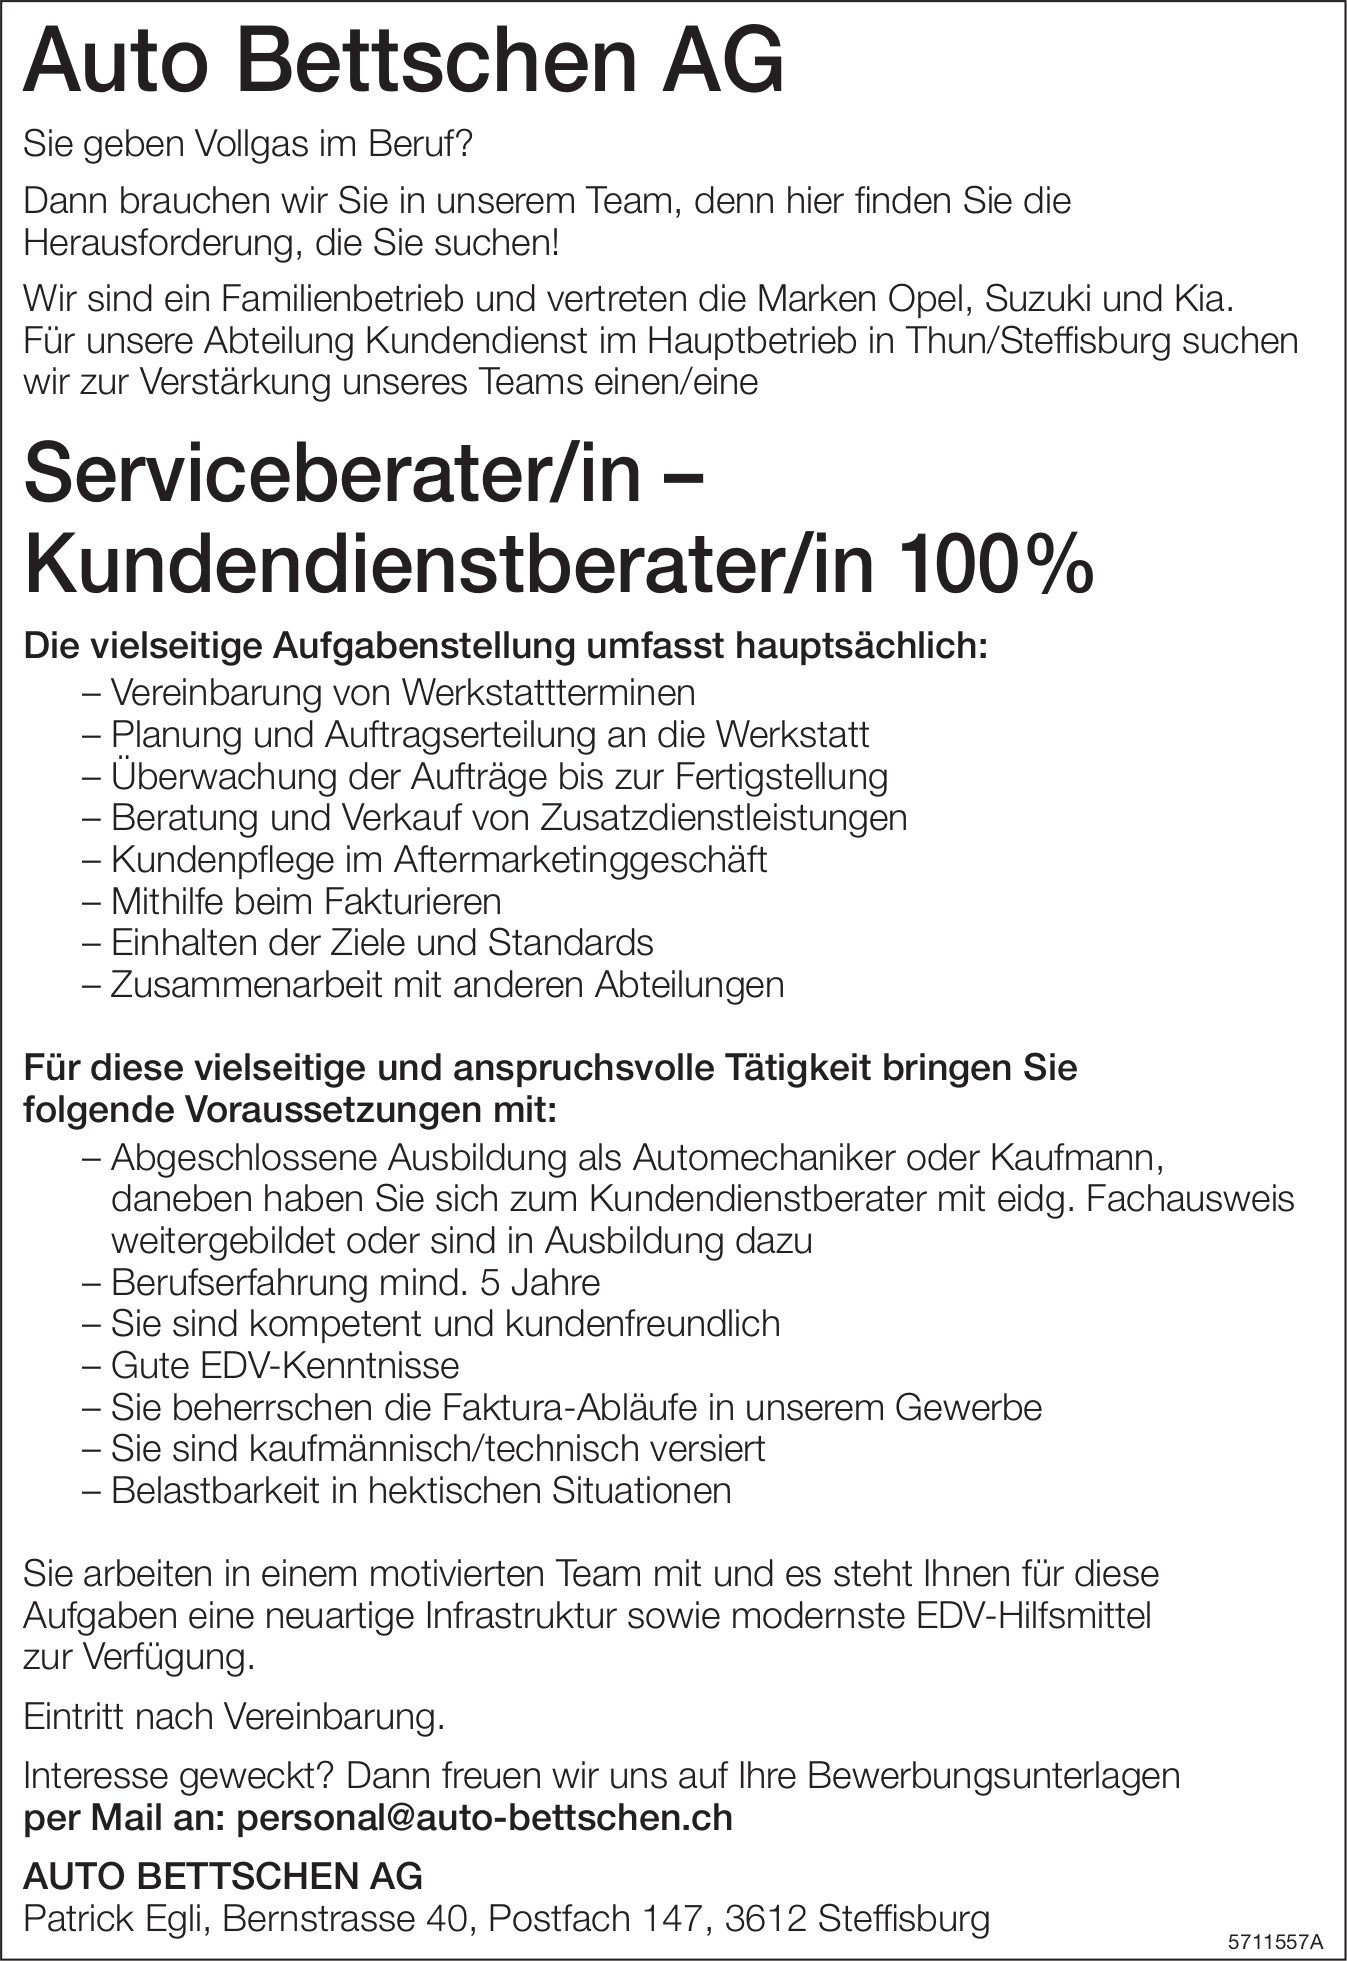 Serviceberater/in – Kundendienstberater/in 100%, Auto Bettschen AG, Steffisburg, gesucht